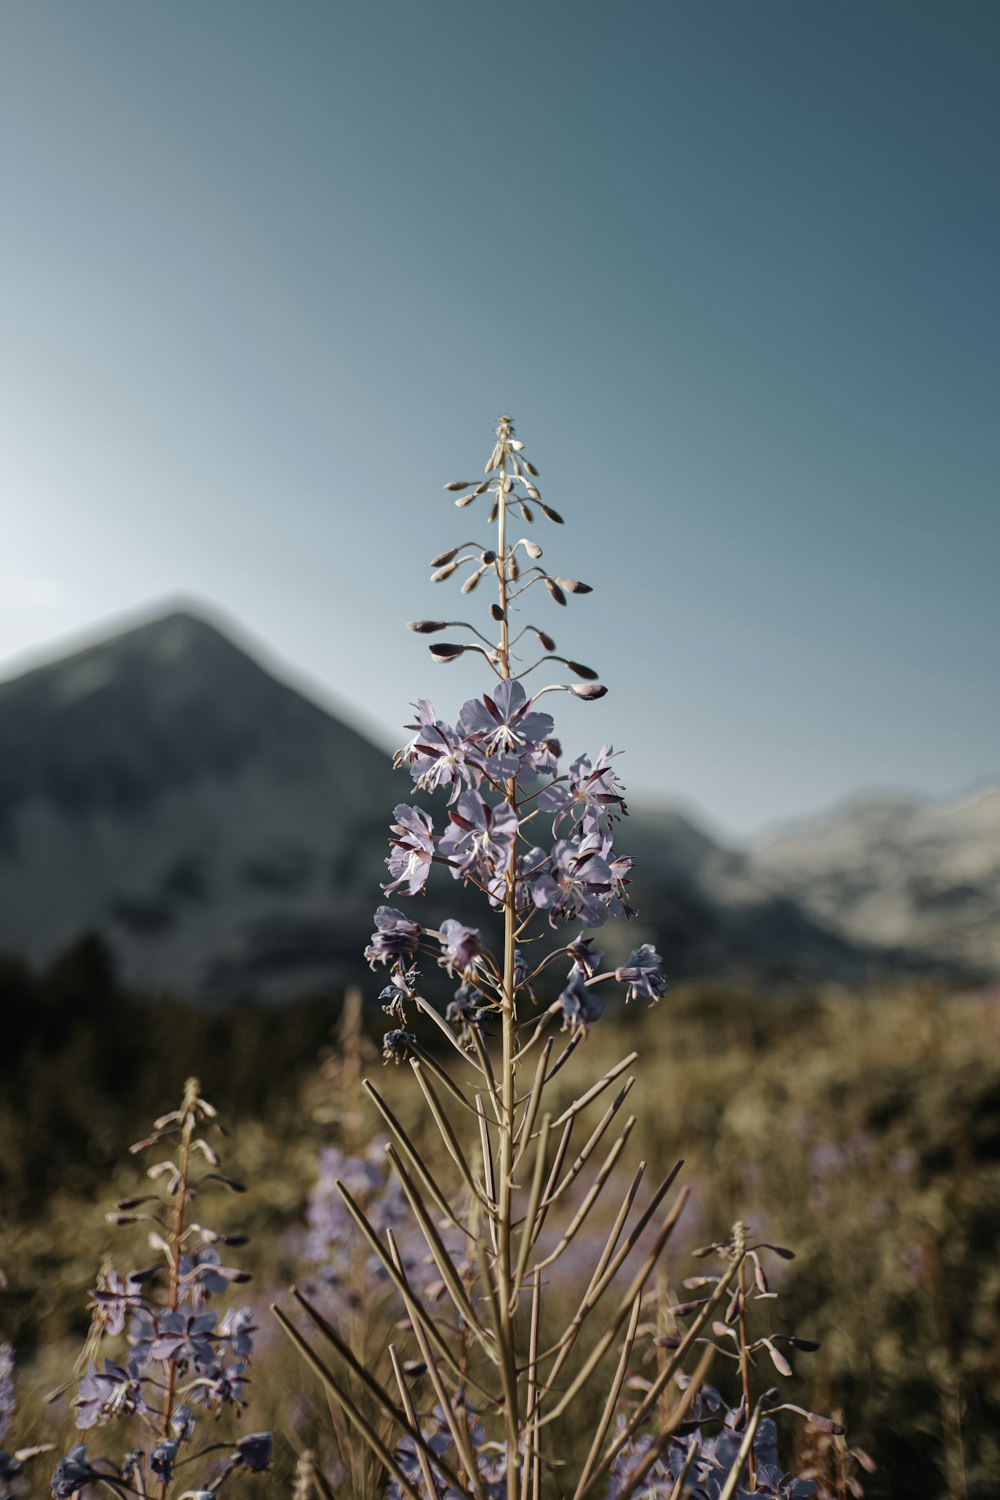 fiore viola davanti alla montagna innevata durante il giorno